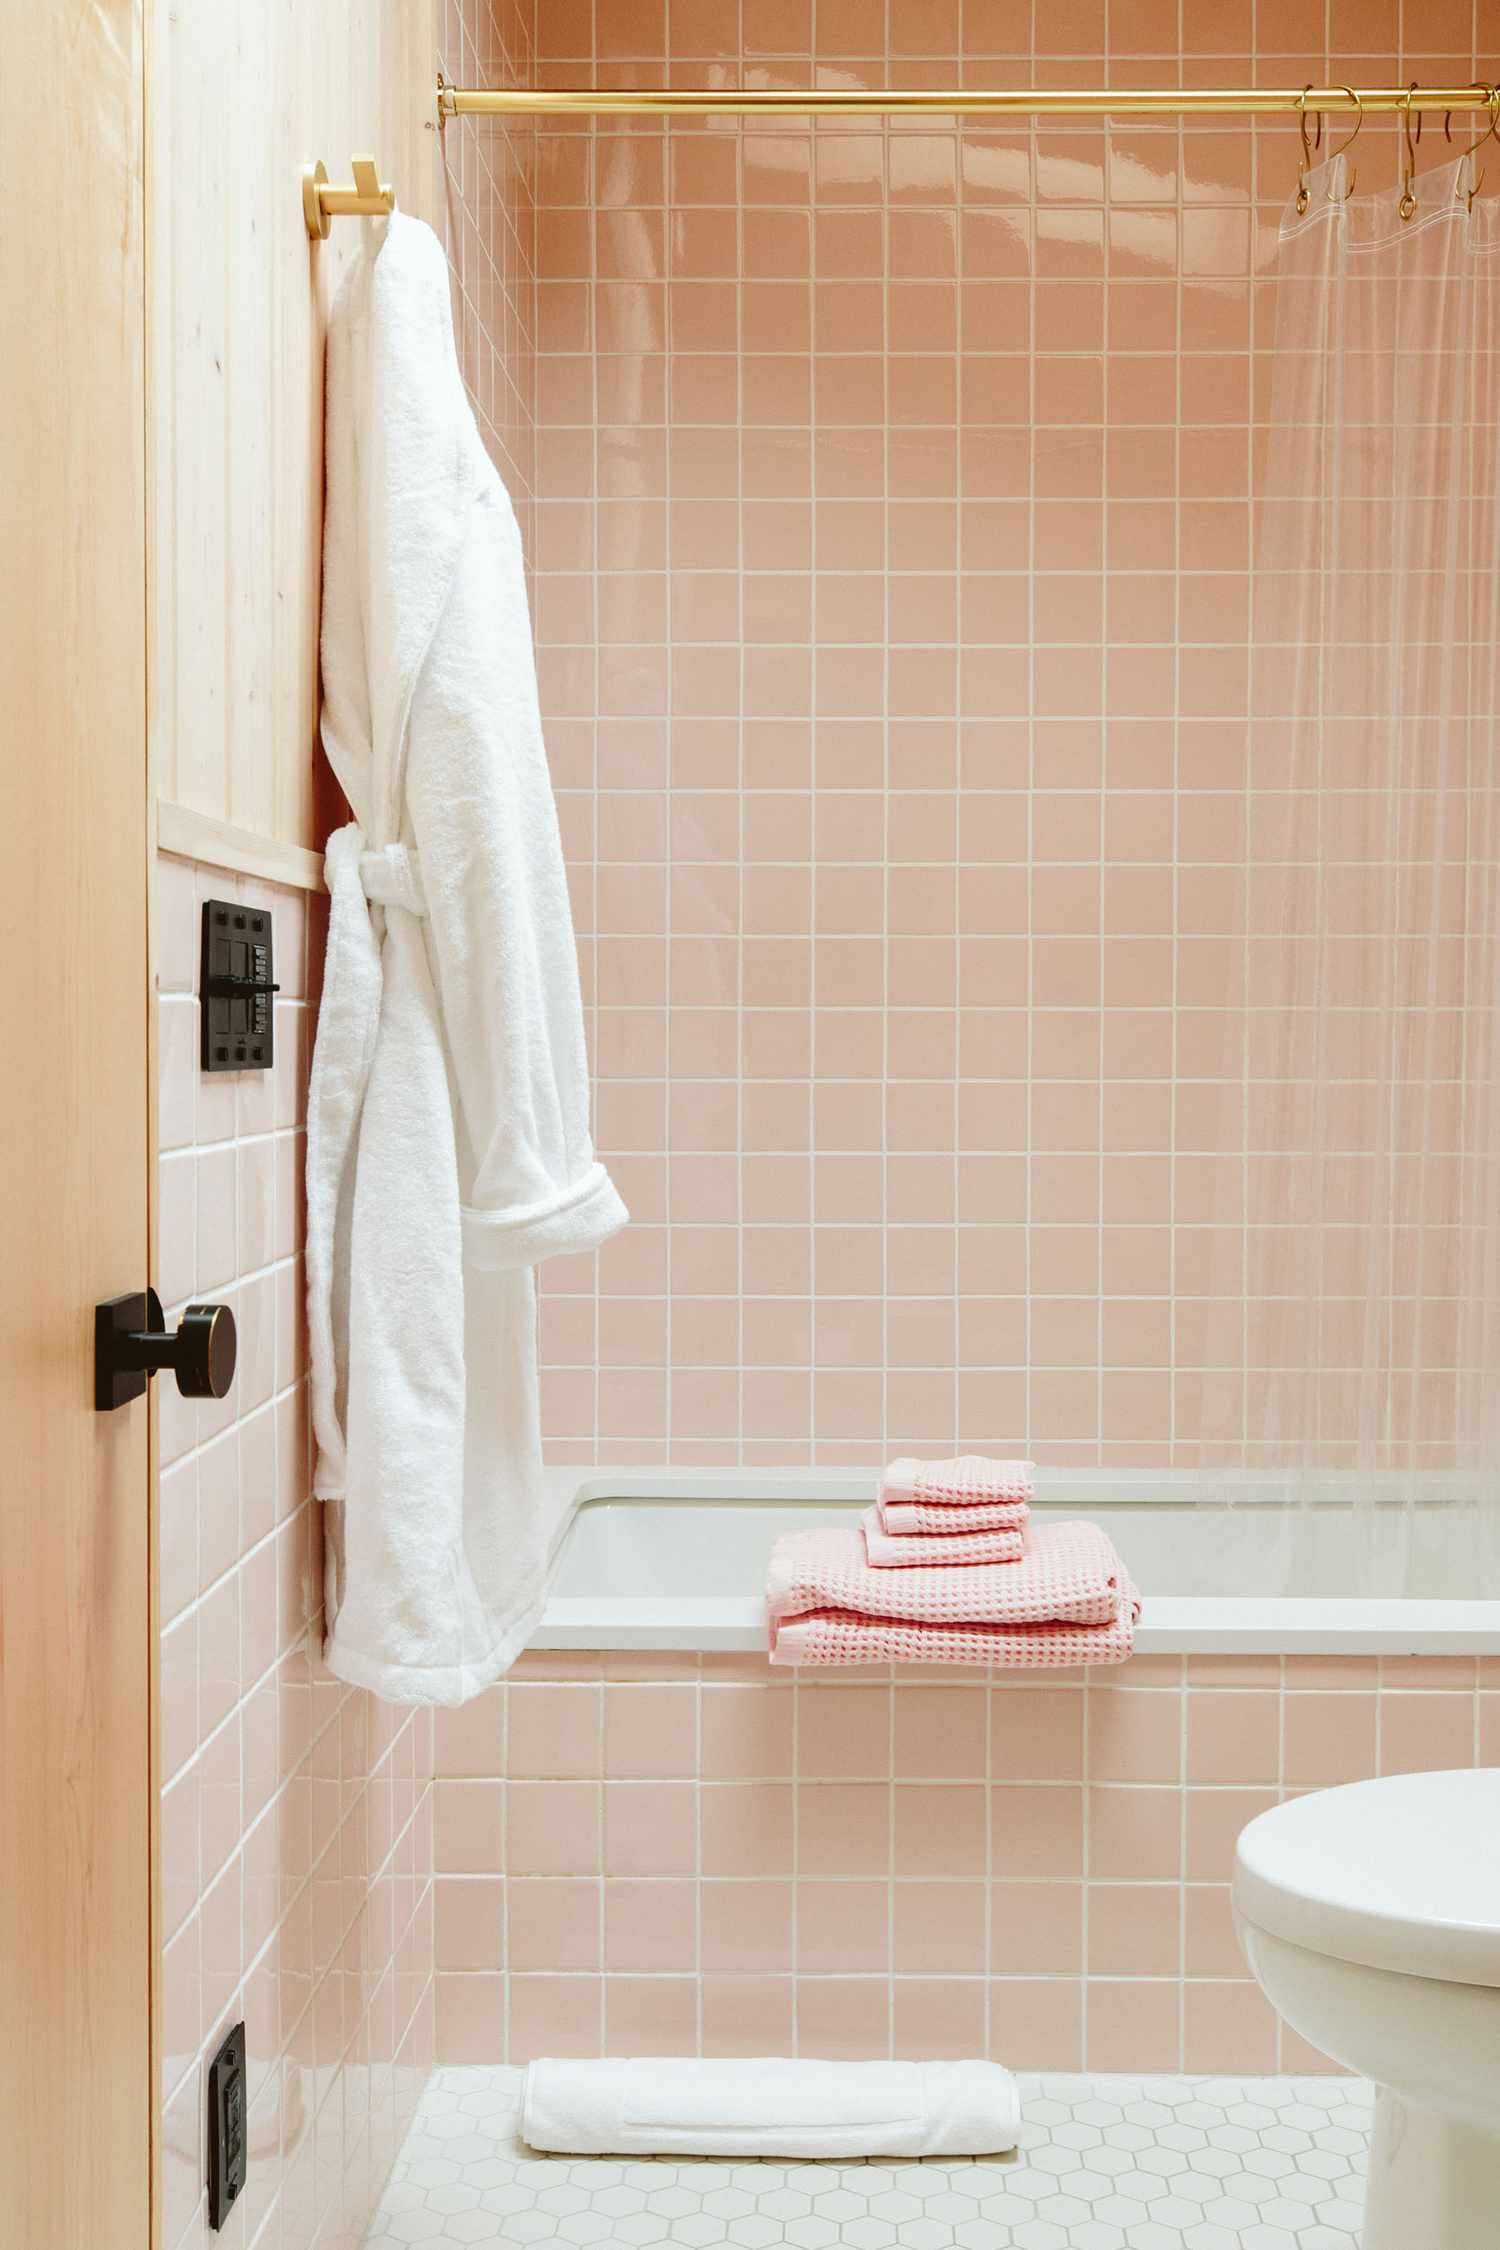 Ein blassrosa Badezimmer erstrahlt durch einen durchsichtigen Vorhang, der die rosafarbenen Kacheln zur Geltung bringt